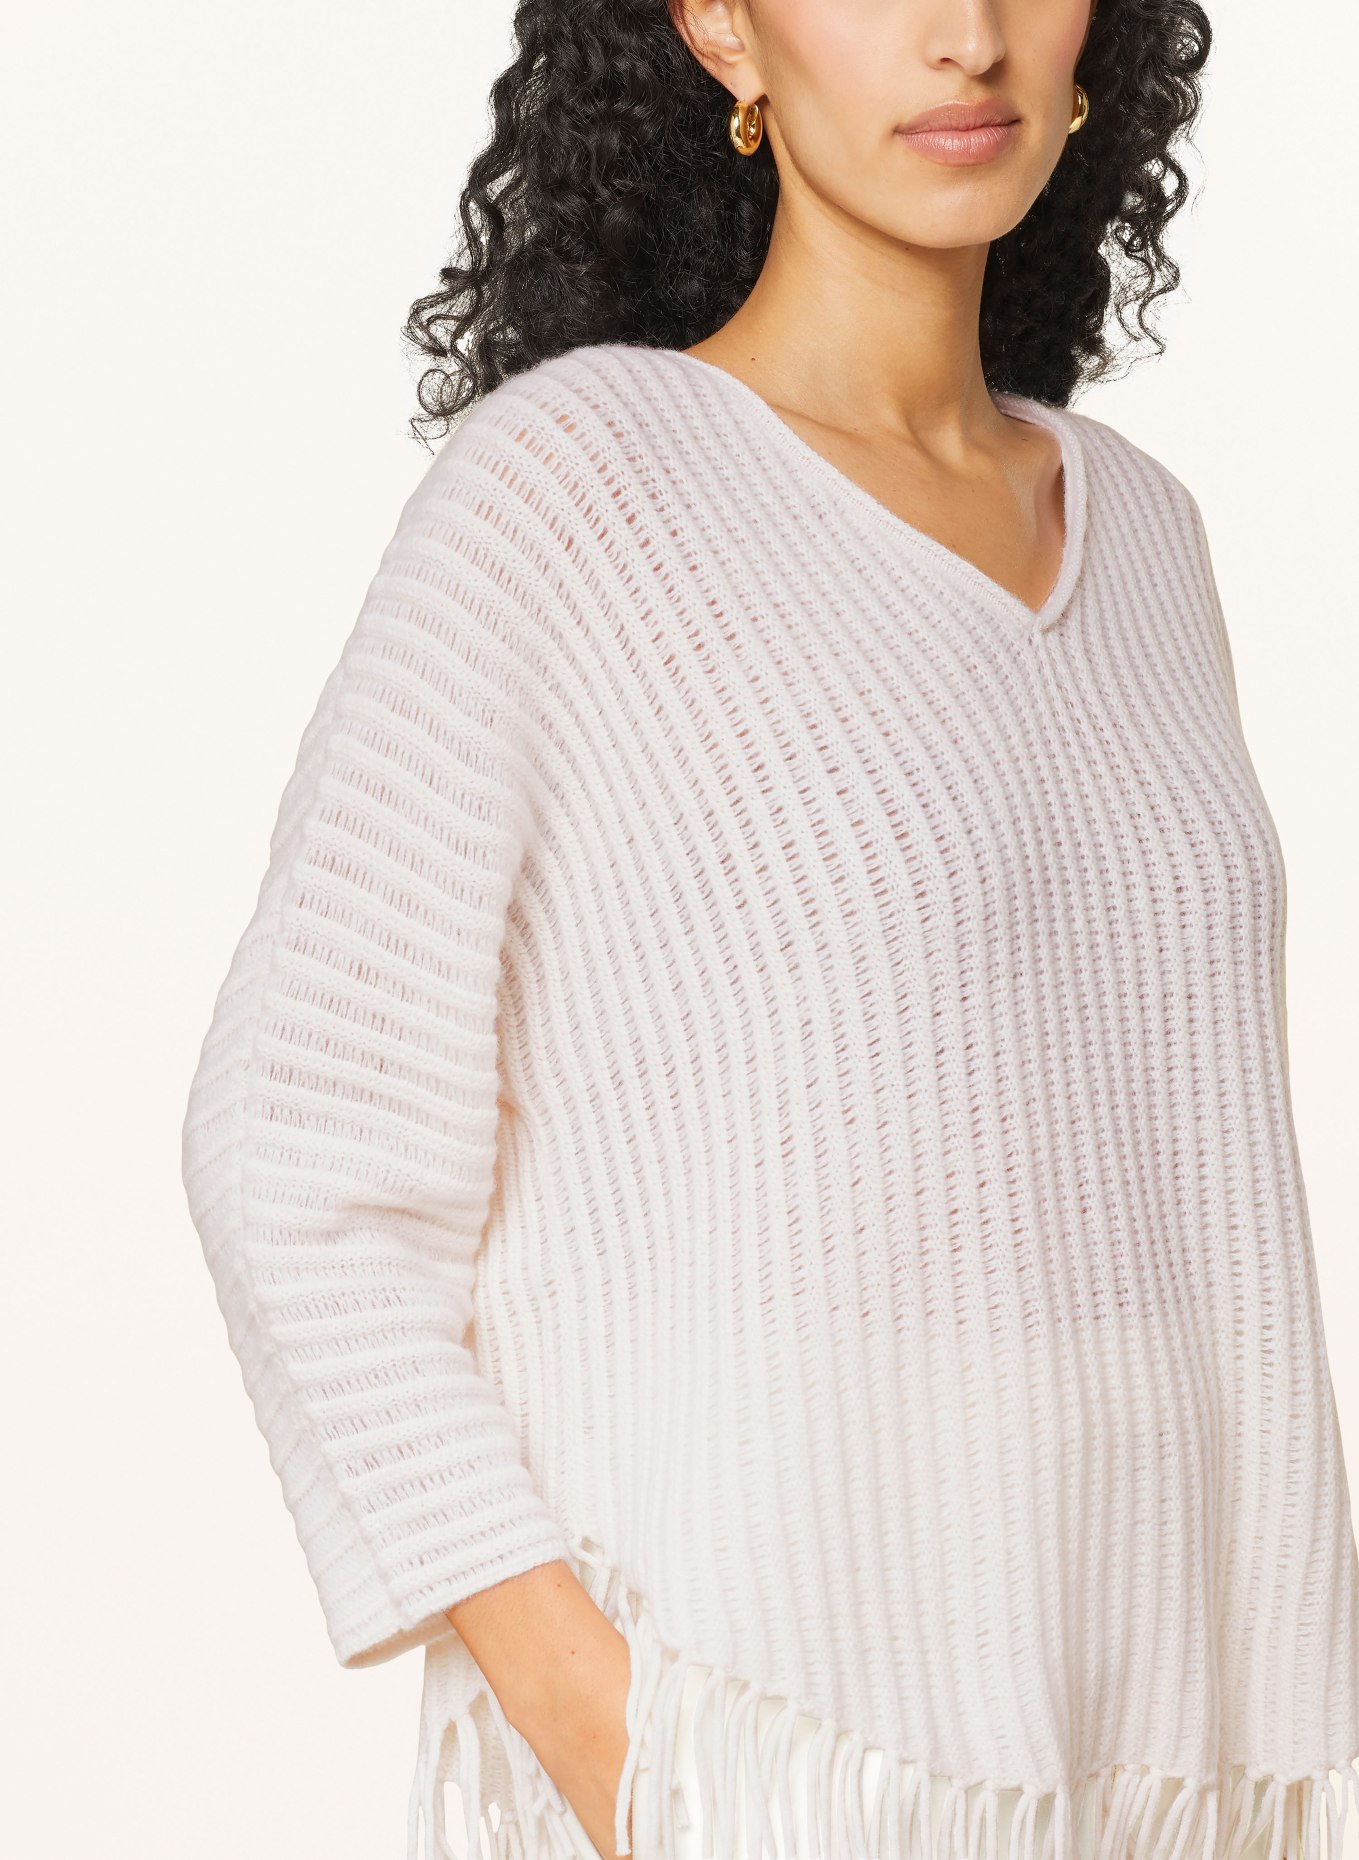 HEMISPHERE Cashmere sweater, Color: ECRU (Image 4)